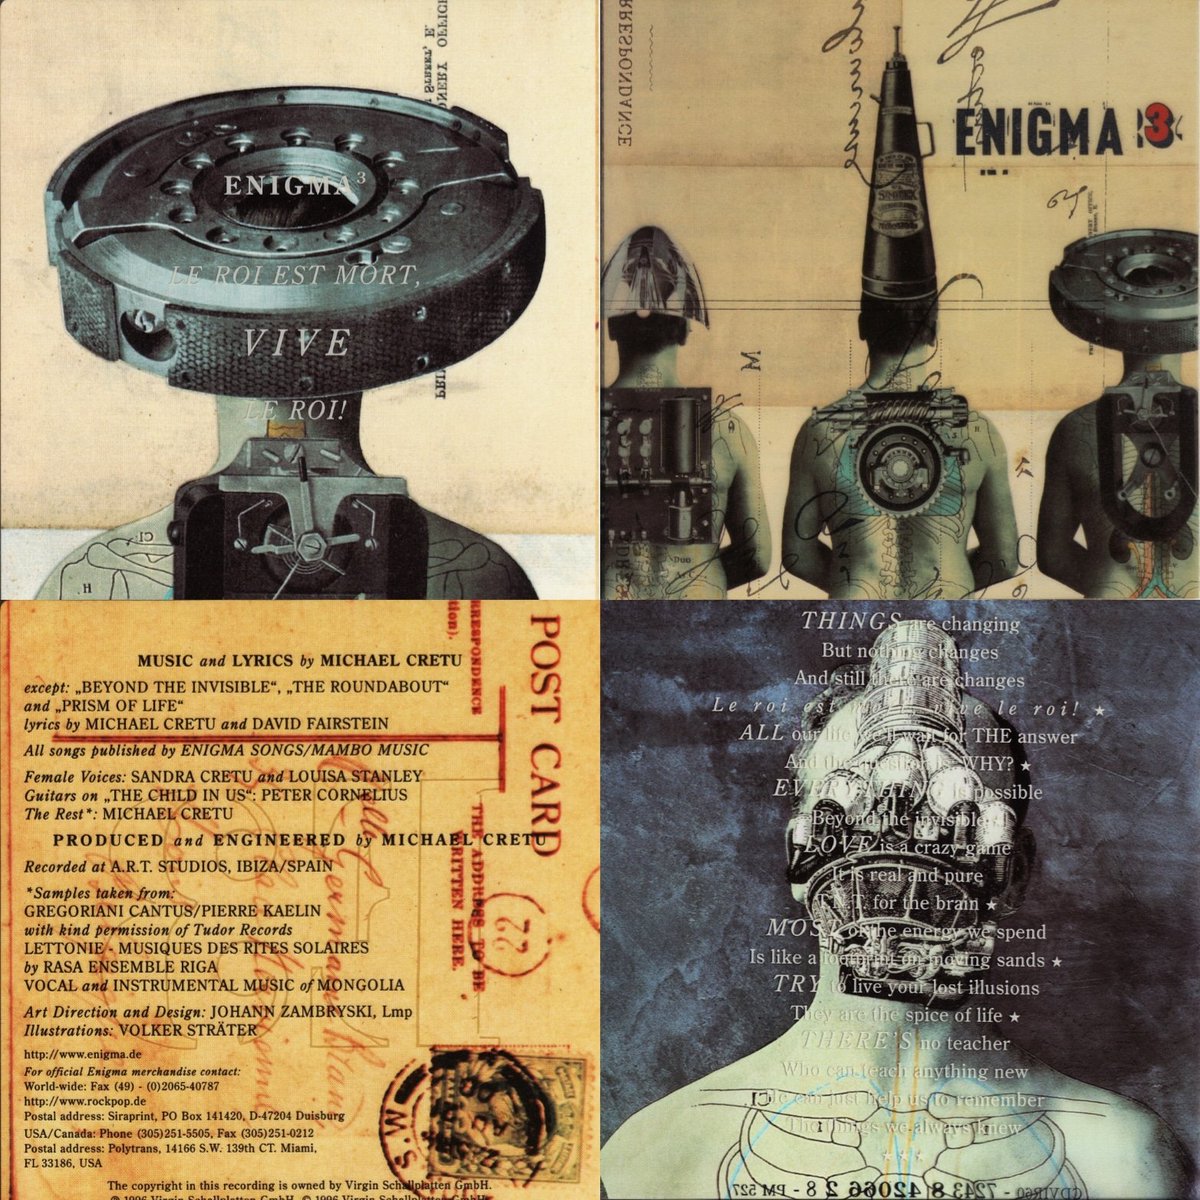 Roi est mort. Enigma le roi est mort Vive le roi альбом. Enigma 1996 le roi est mort Vive le roi обложка альбома. Enigma 3. Enigma обложка.